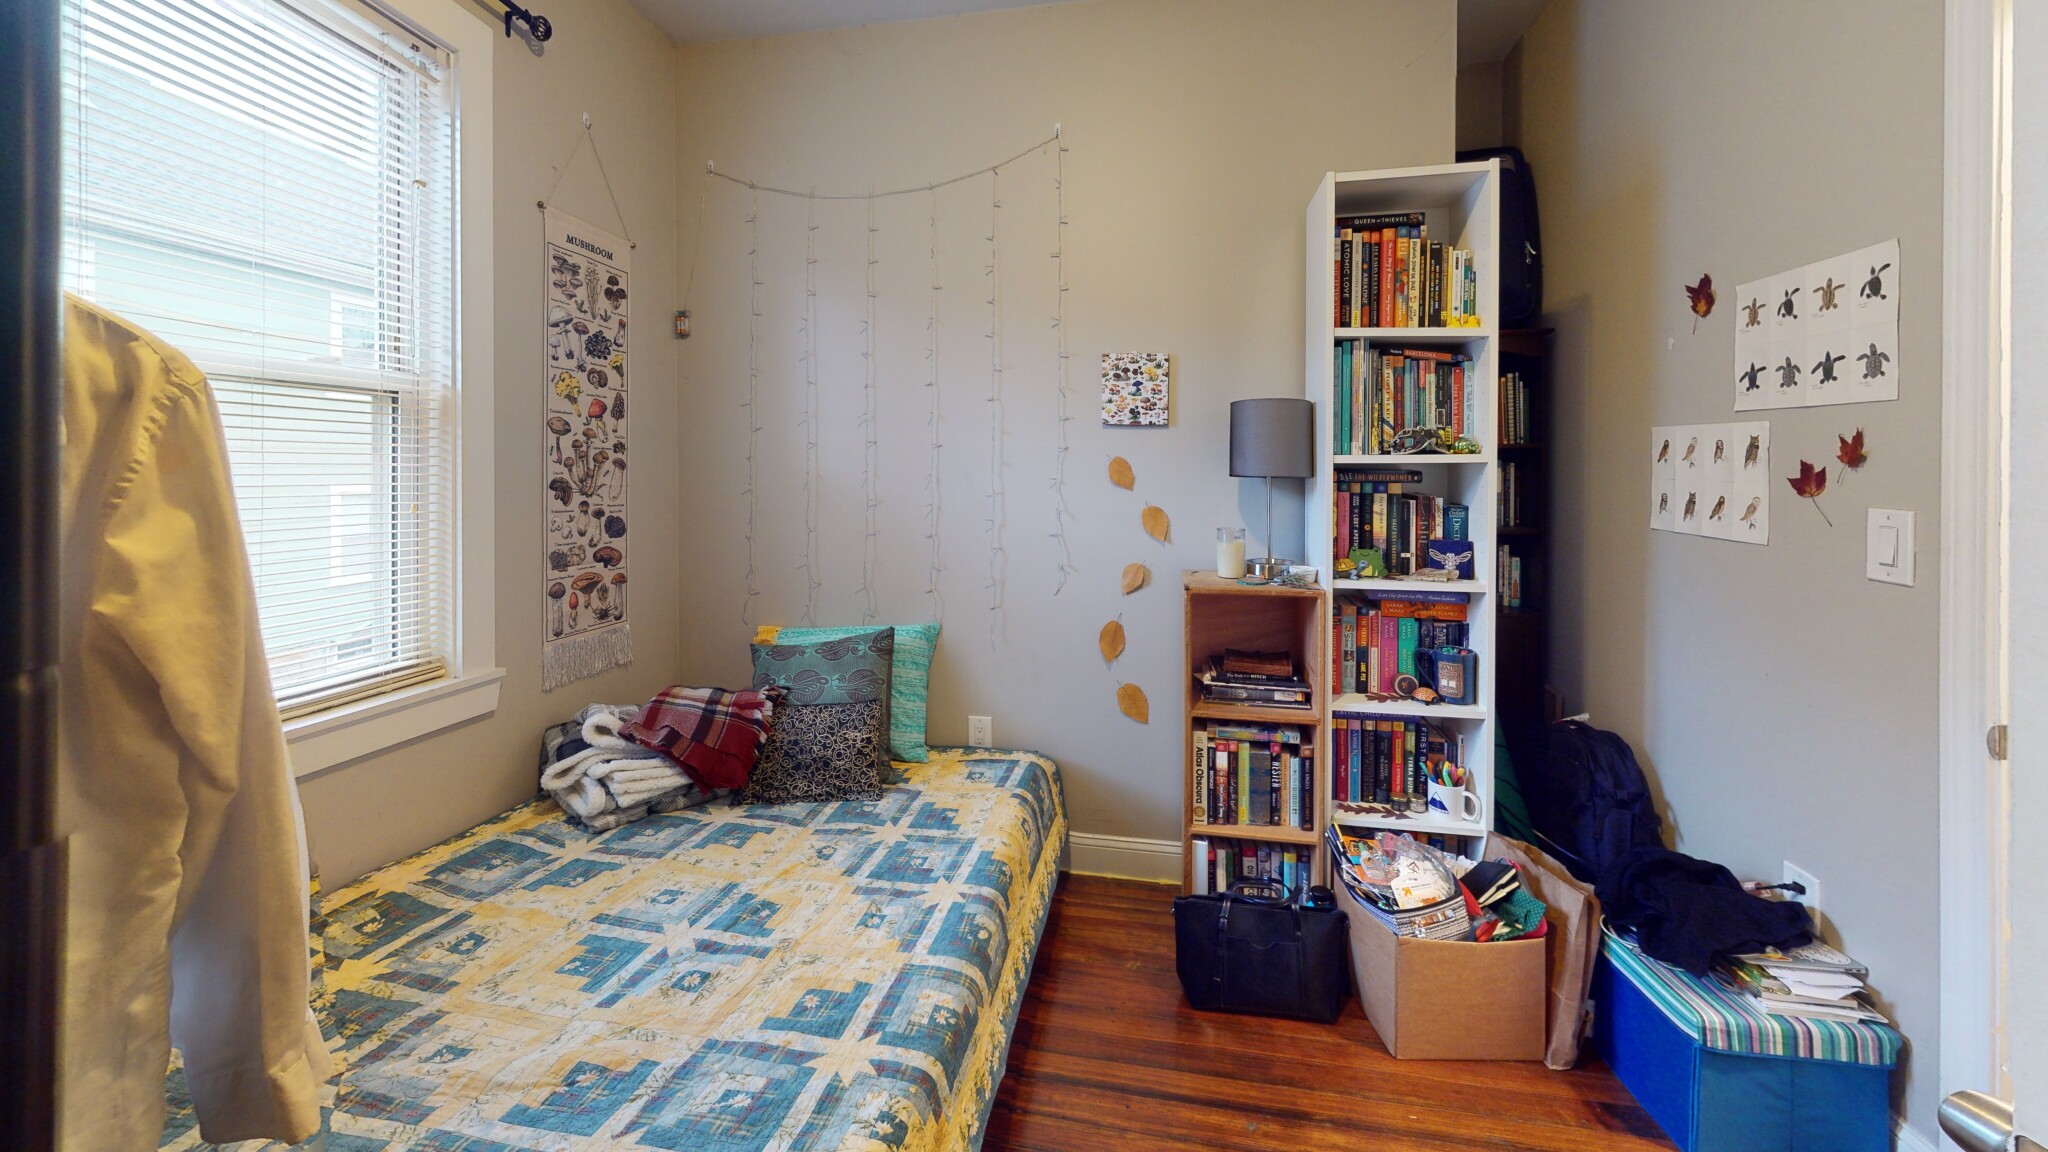 Photos of apartment on Boylston Pl.,Boston MA 02130